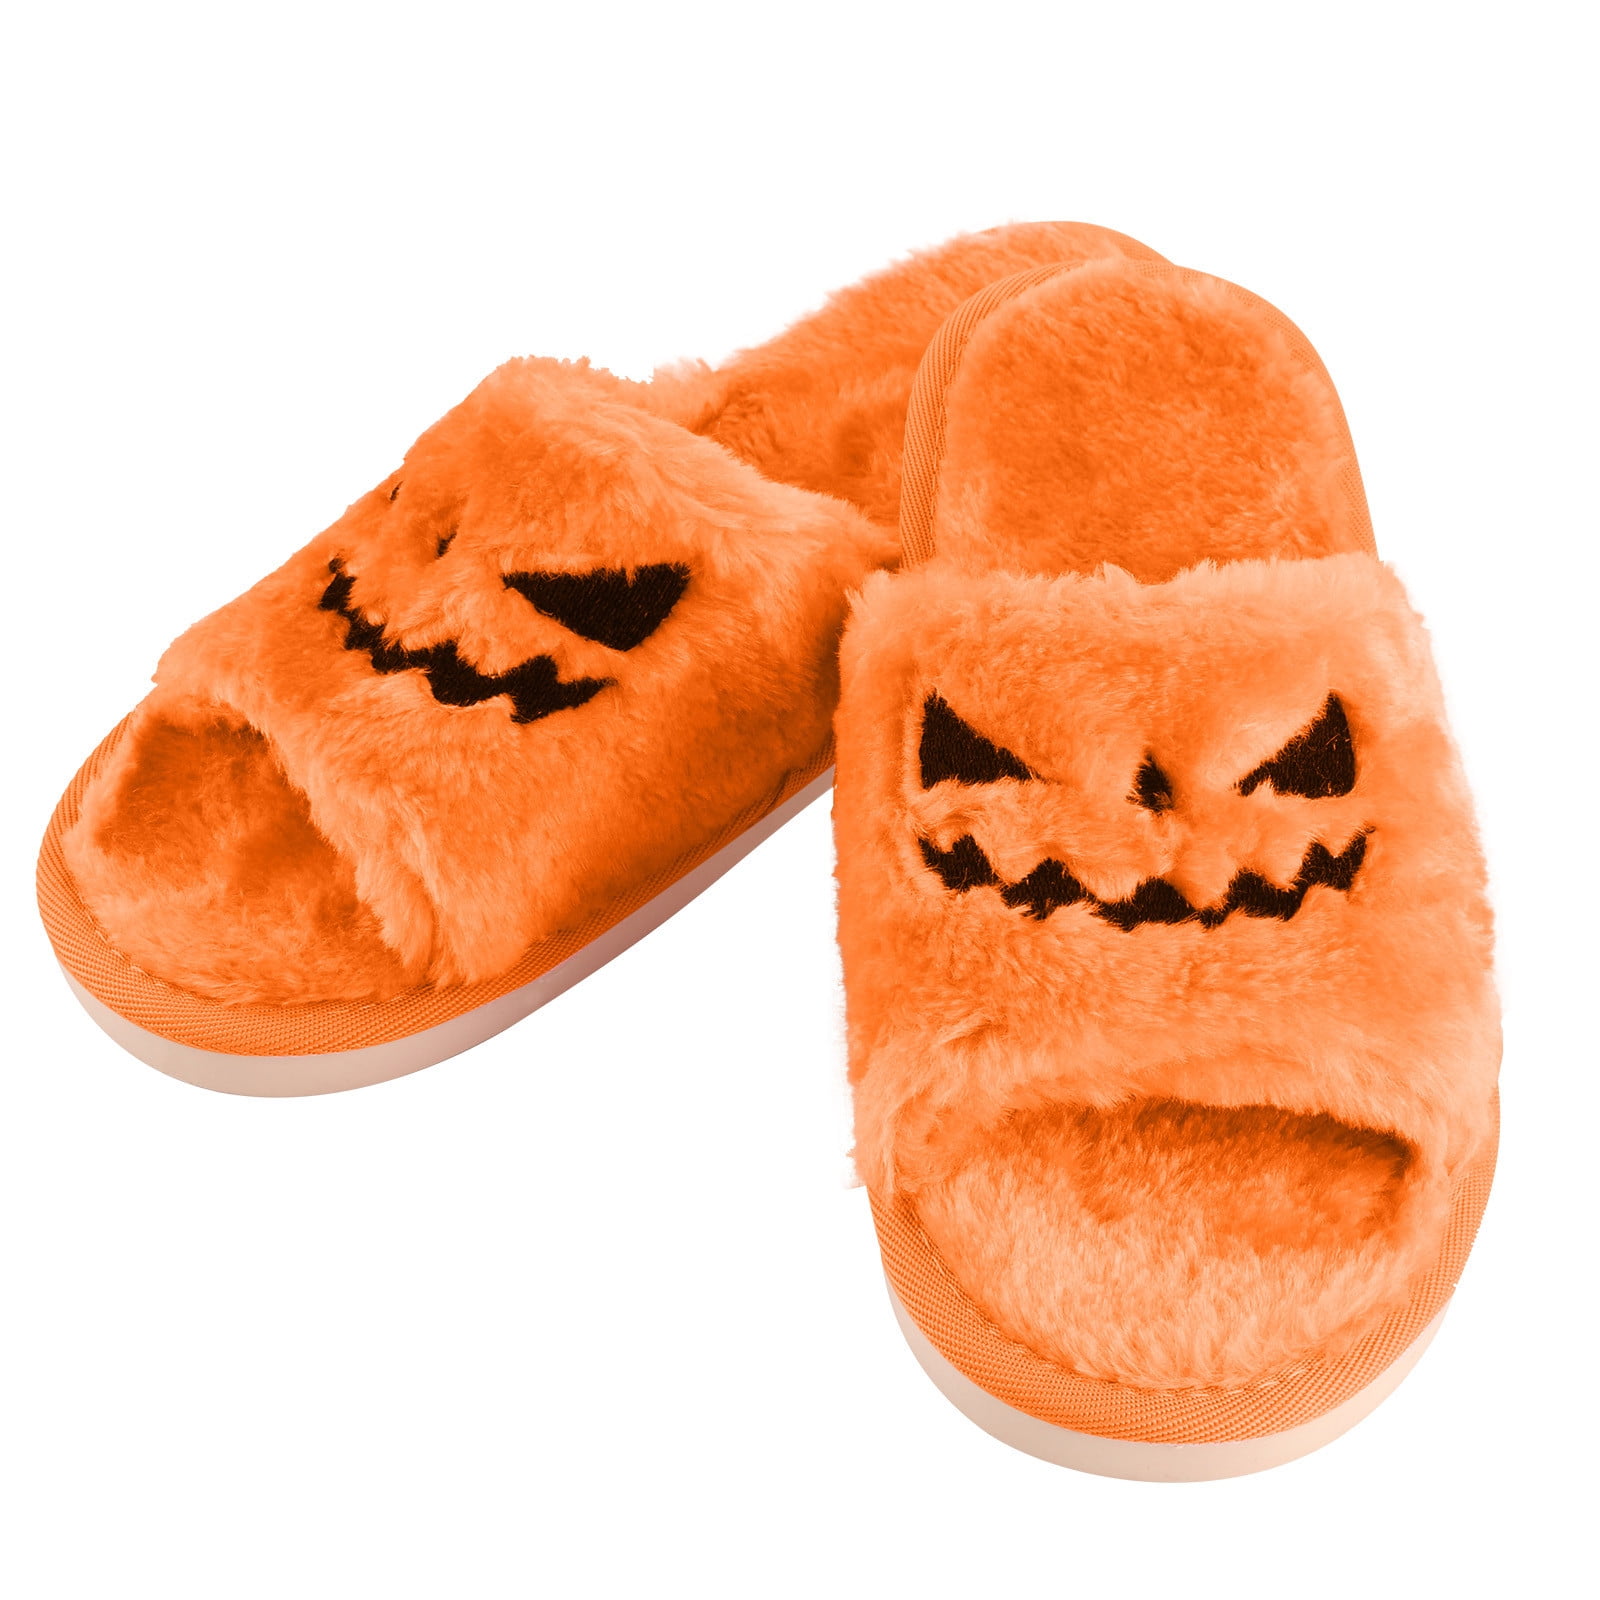 Halloween Slippers Plush Cozy Open Toe Women Indoor Or Outdoor Fuzzy Shoes Gifts For Girls Ladies Women - Walmart.com